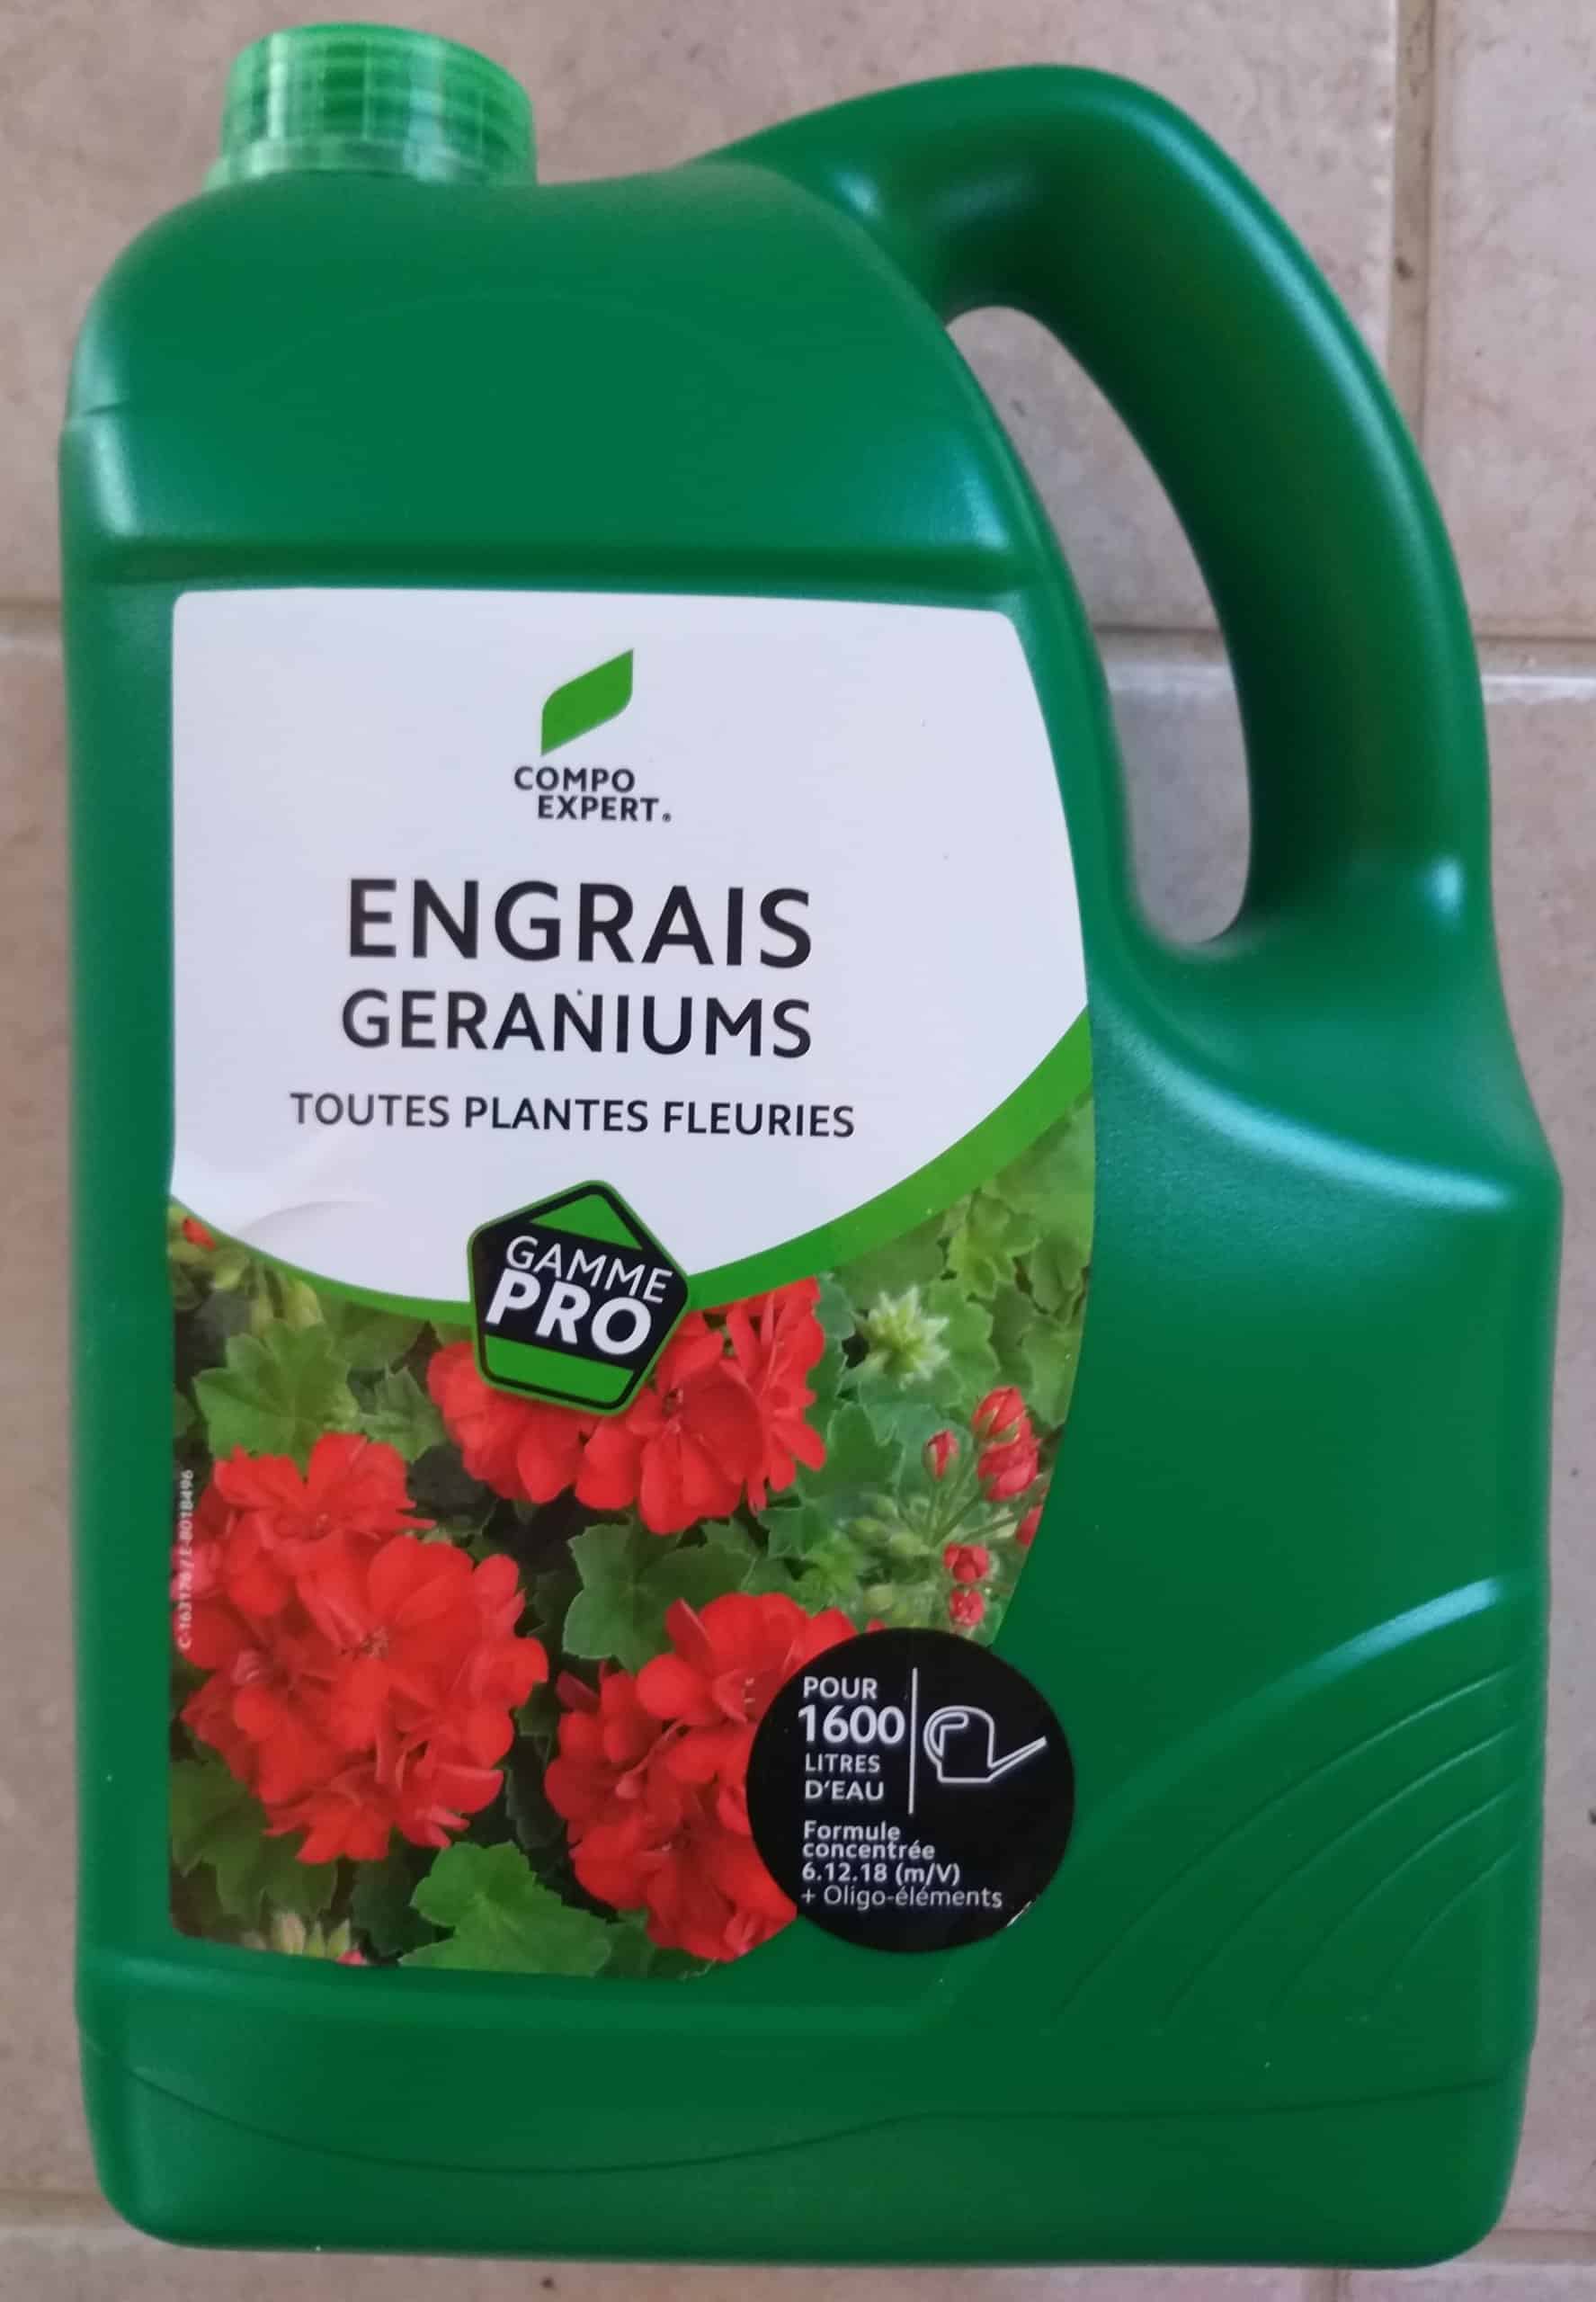 Algoflash - Engrais Plantes Vertes et Plantes Fleuries 1 L - Gamm vert